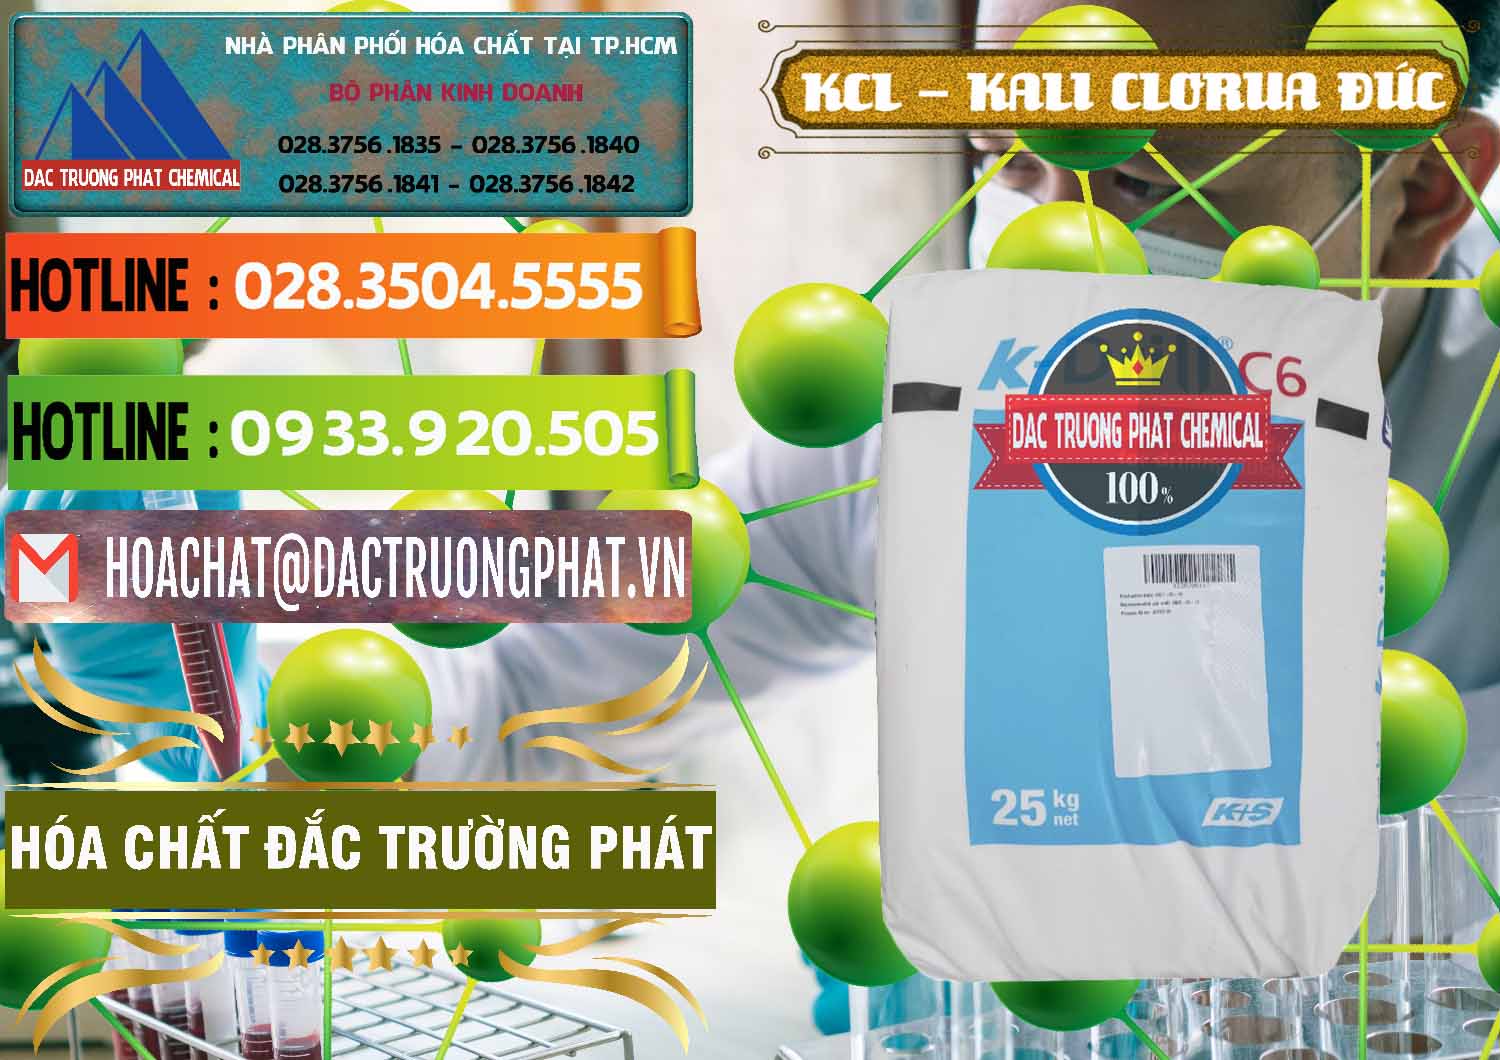 Công ty chuyên kinh doanh và bán KCL – Kali Clorua Trắng K DRILL Đức Germany - 0428 - Nhà cung ứng và phân phối hóa chất tại TP.HCM - cungcaphoachat.com.vn